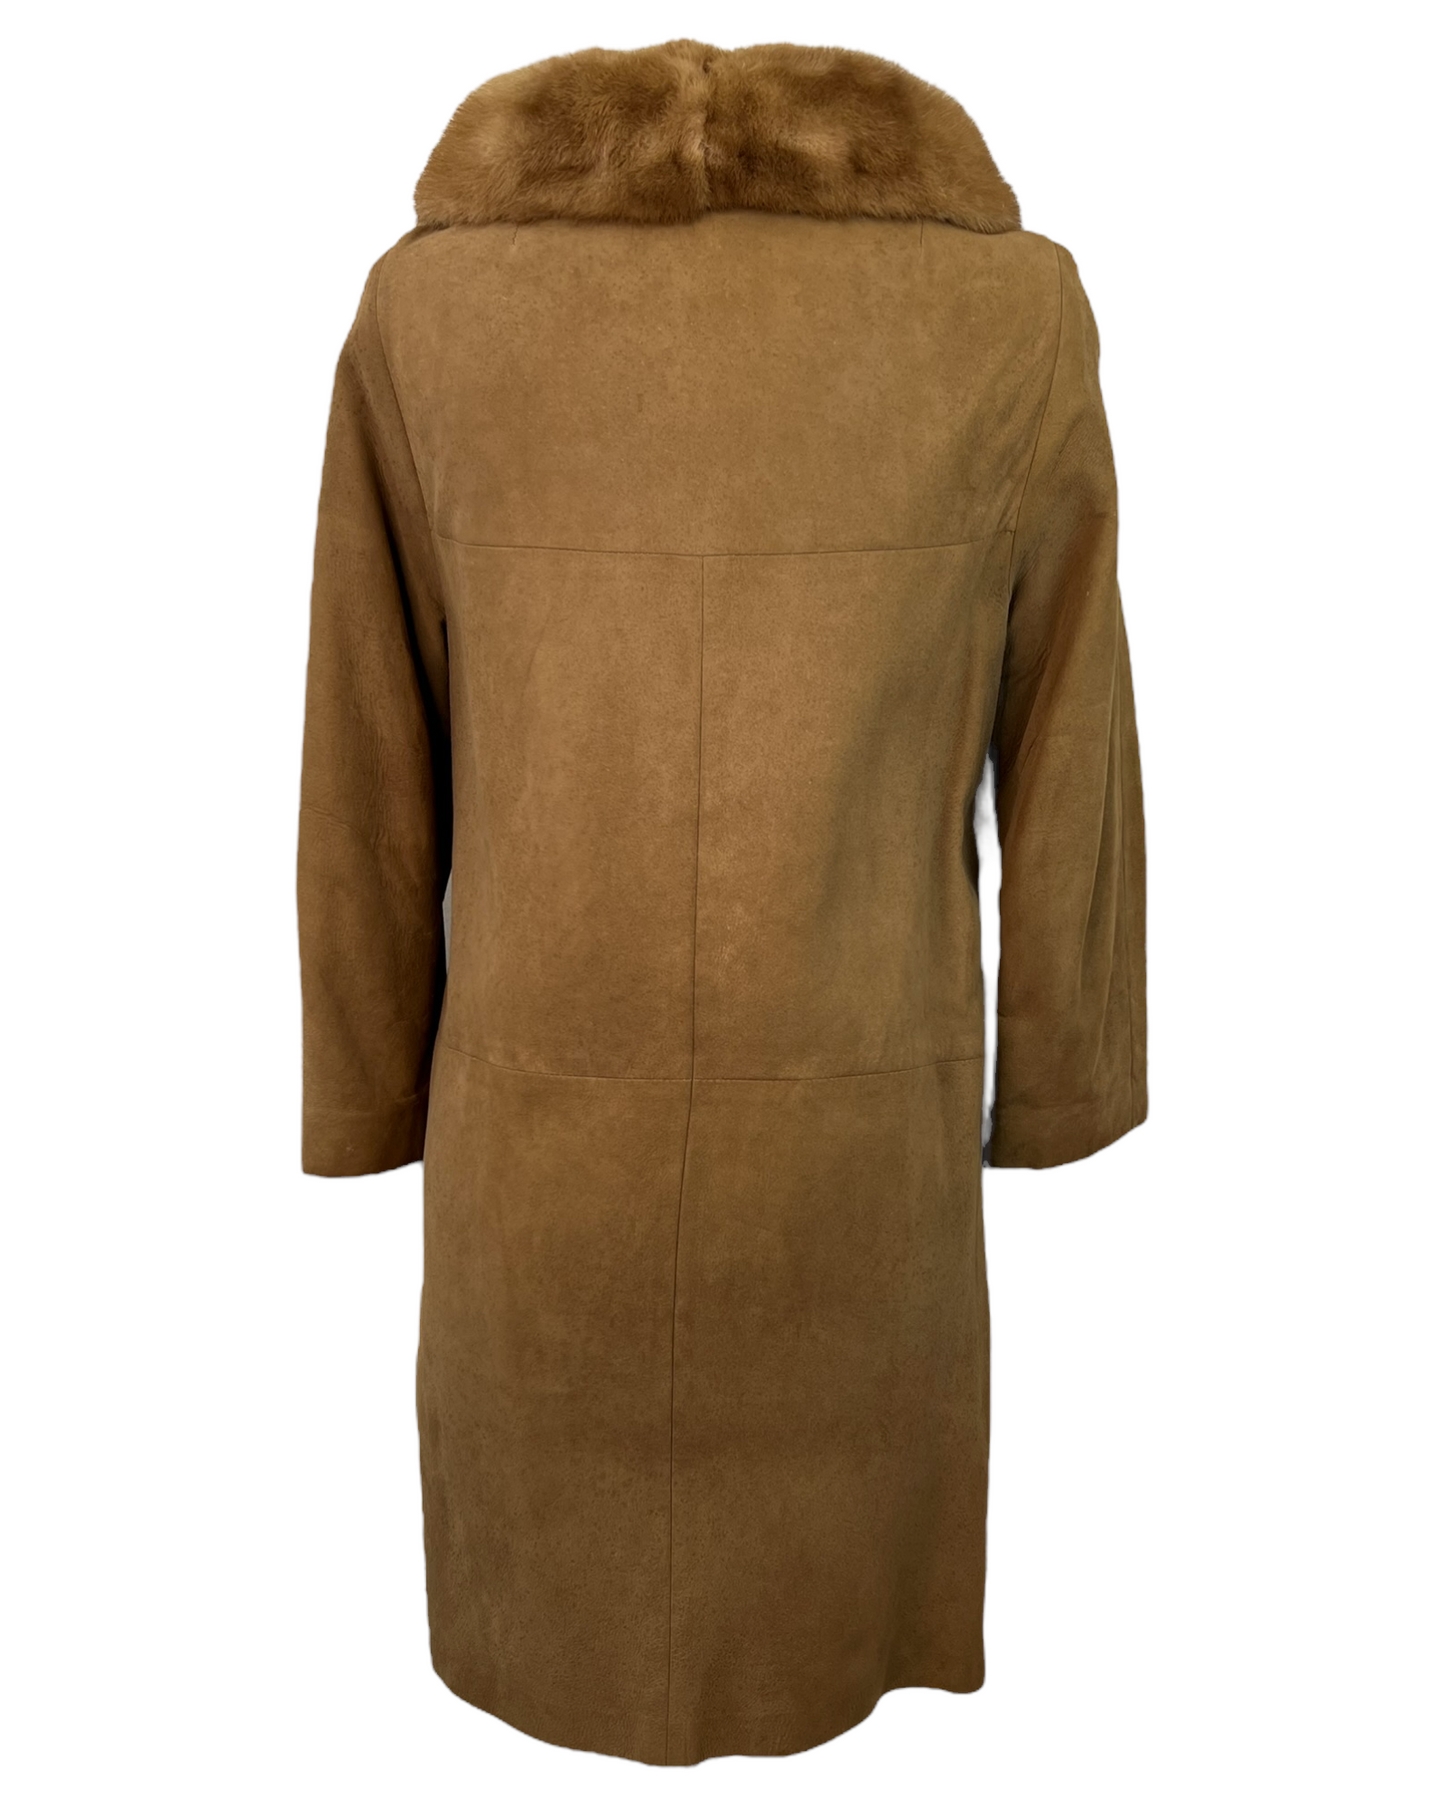 Vintage Camel Suede Coat